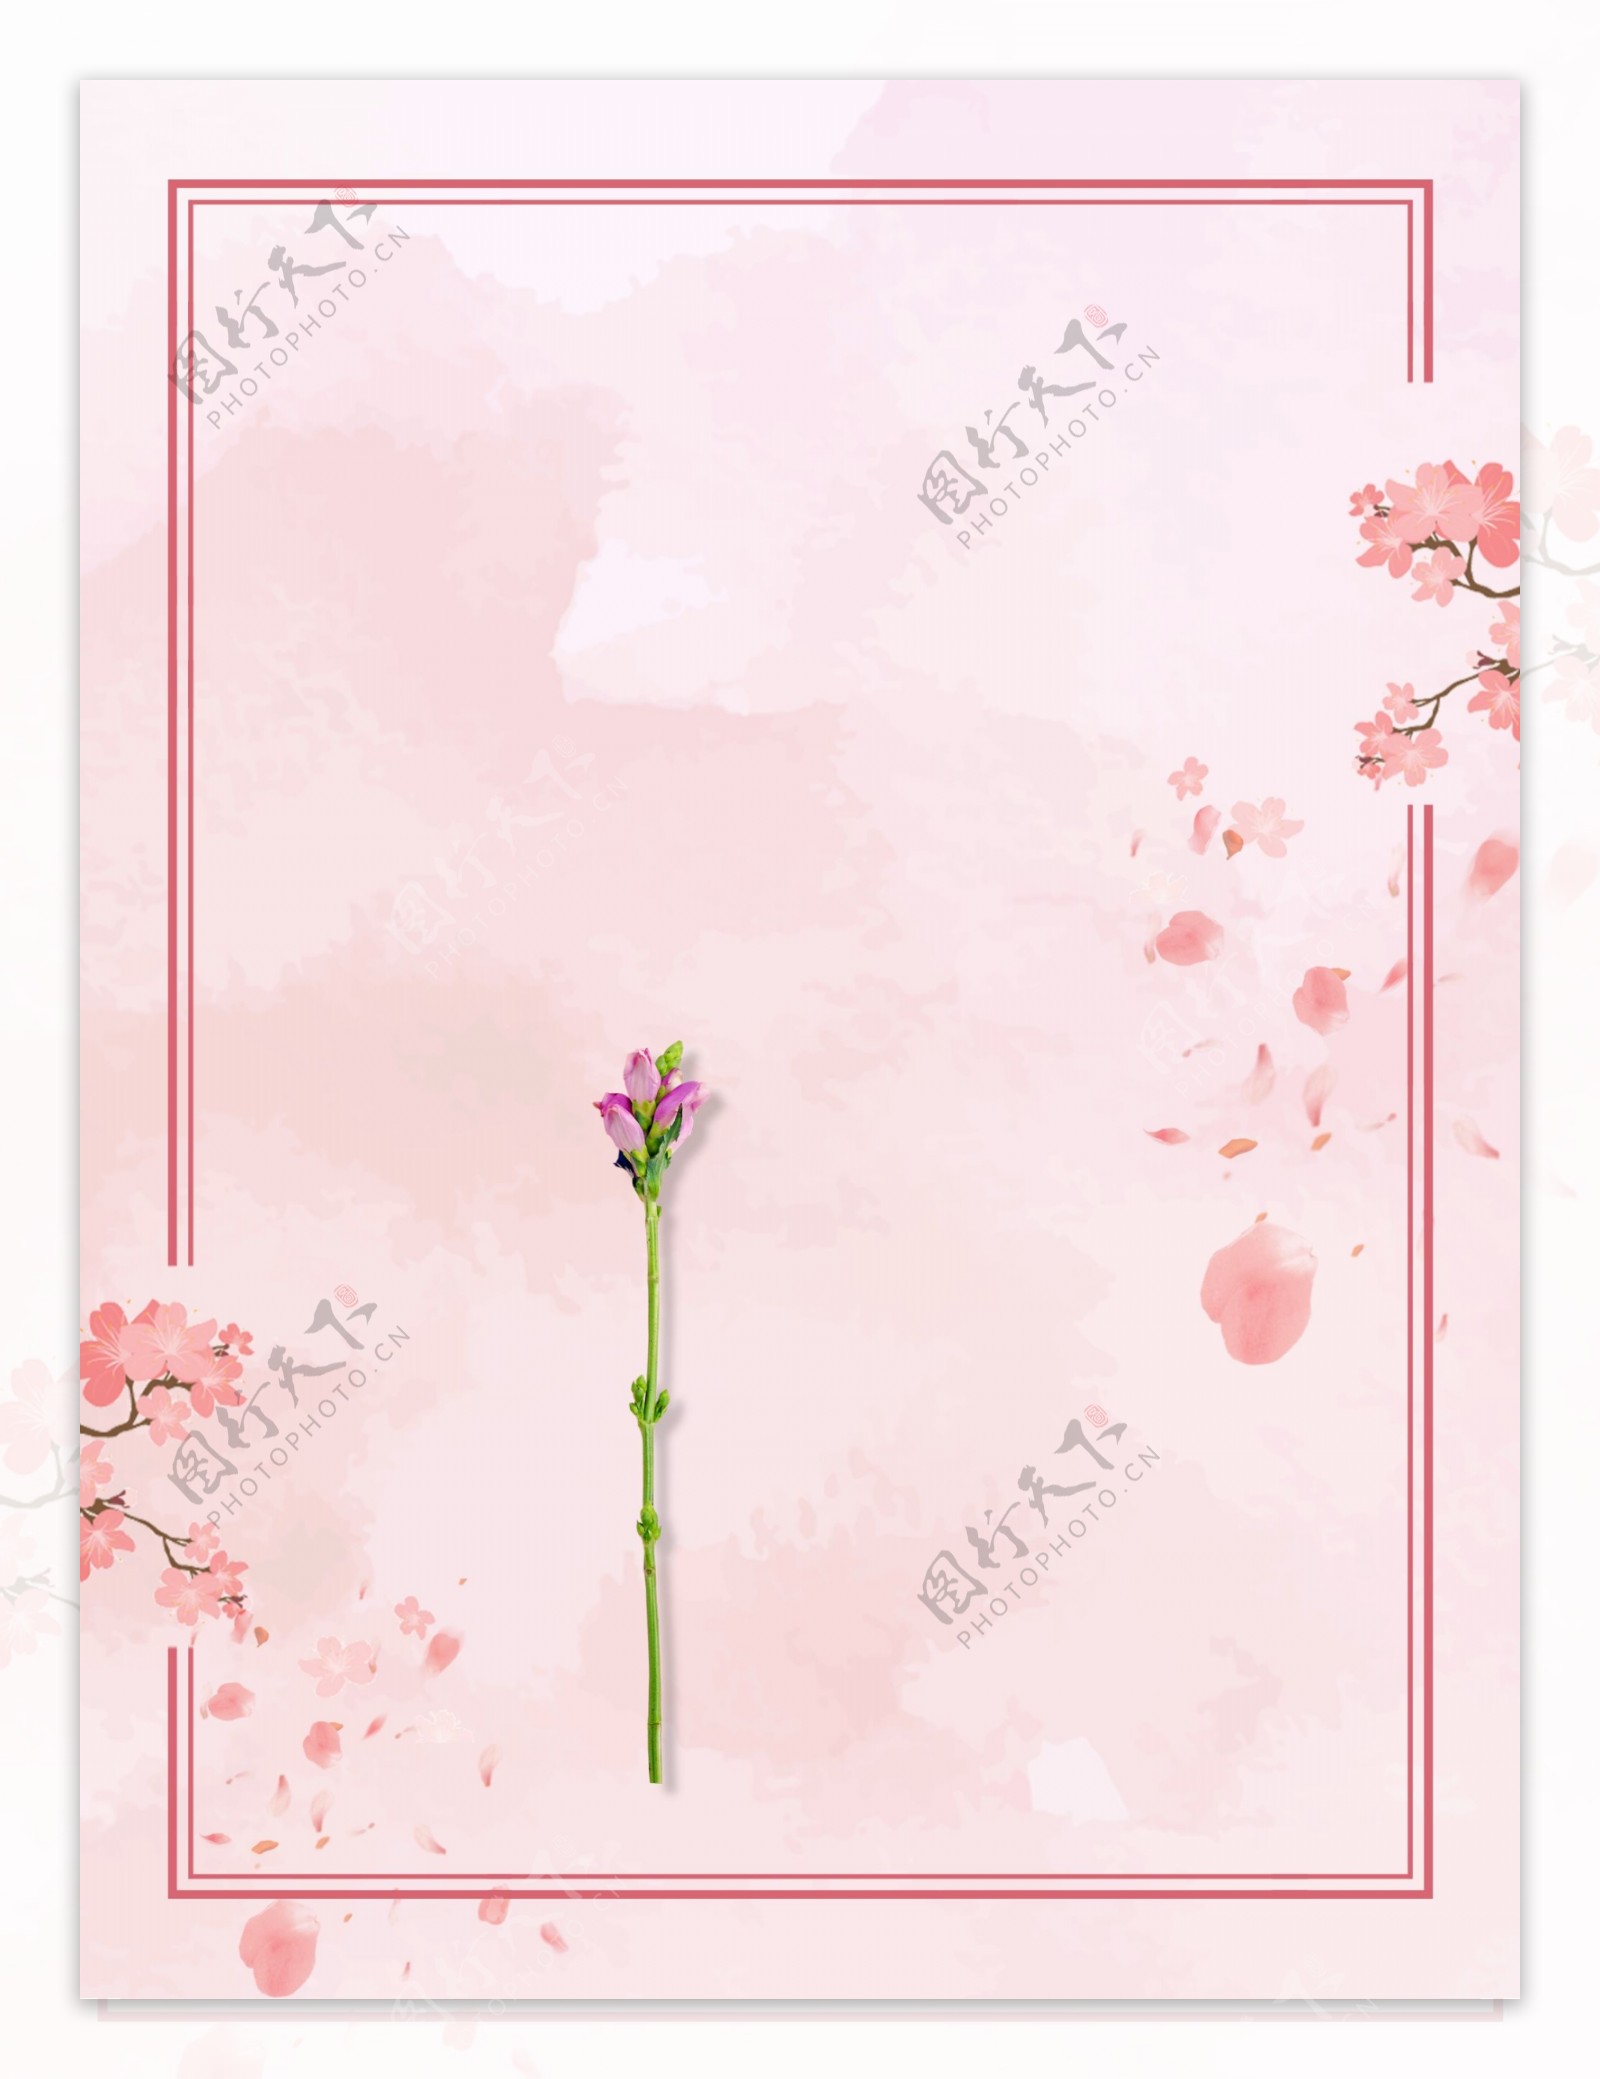 温馨粉色花瓣边框背景素材